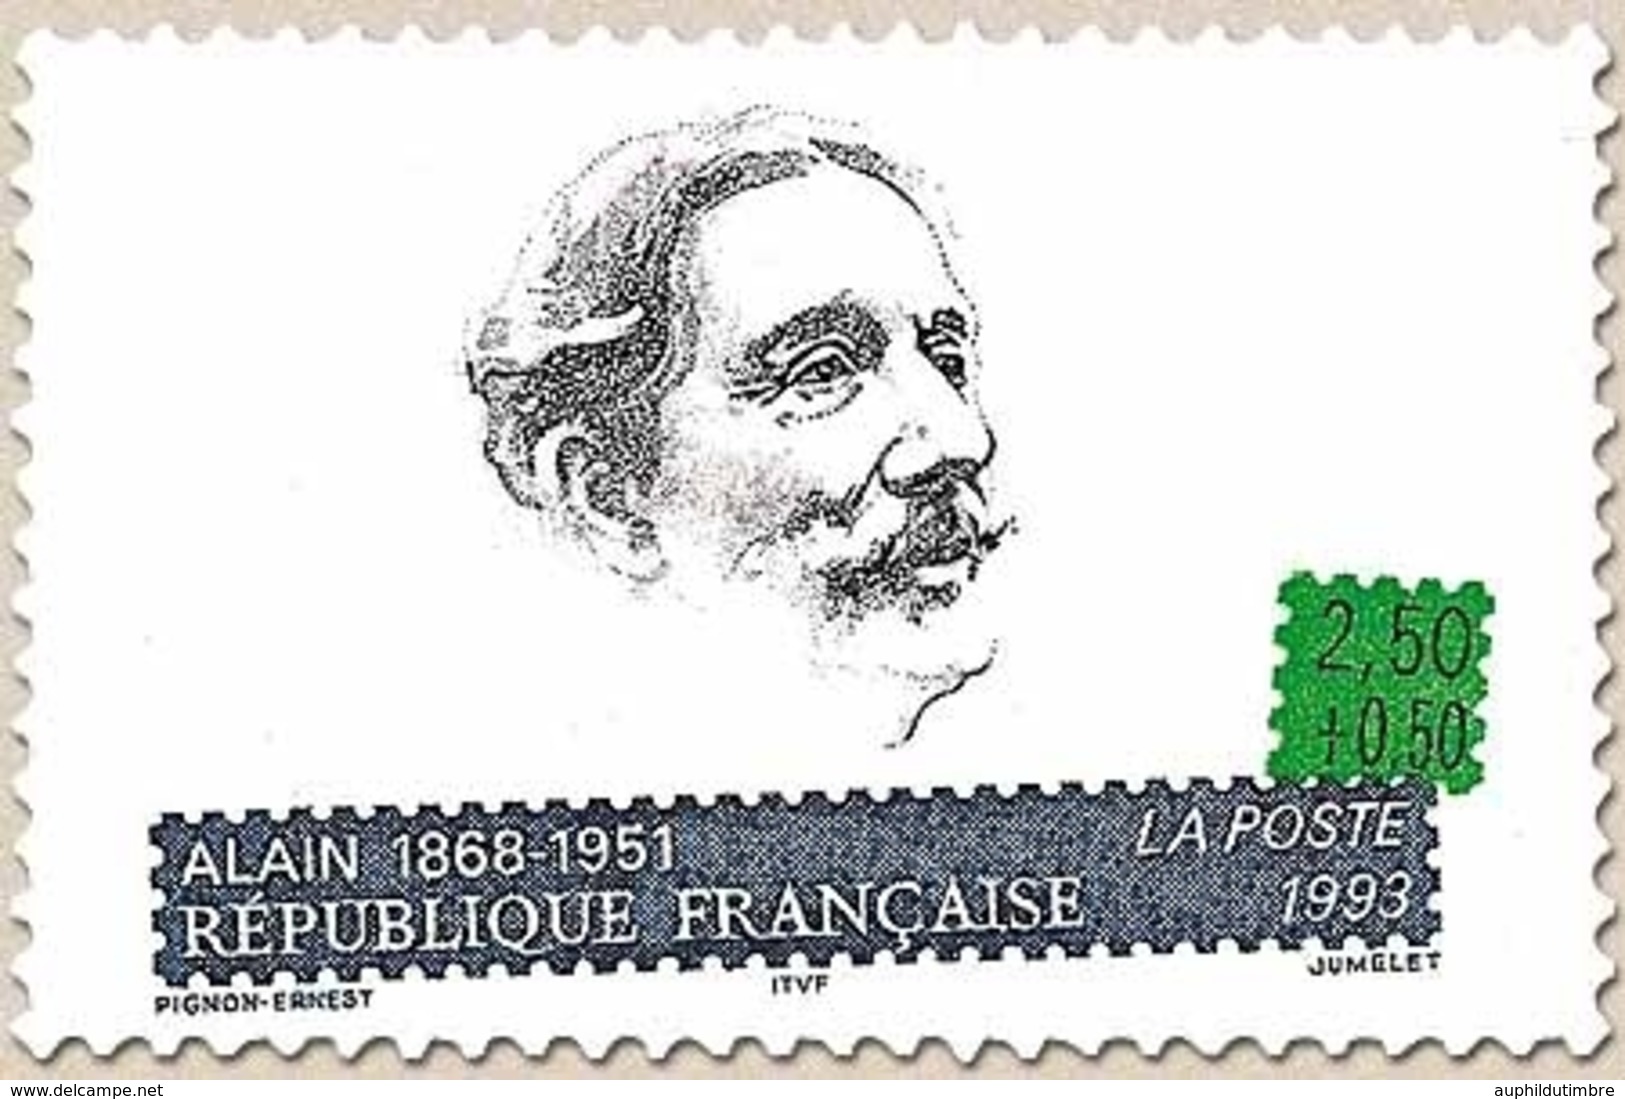 Personnages Célèbres. Ecrivains Français. Emile Chartier, Dit Alain (1868-1951)  2f.50 + 50c. Y2800 - Ongebruikt